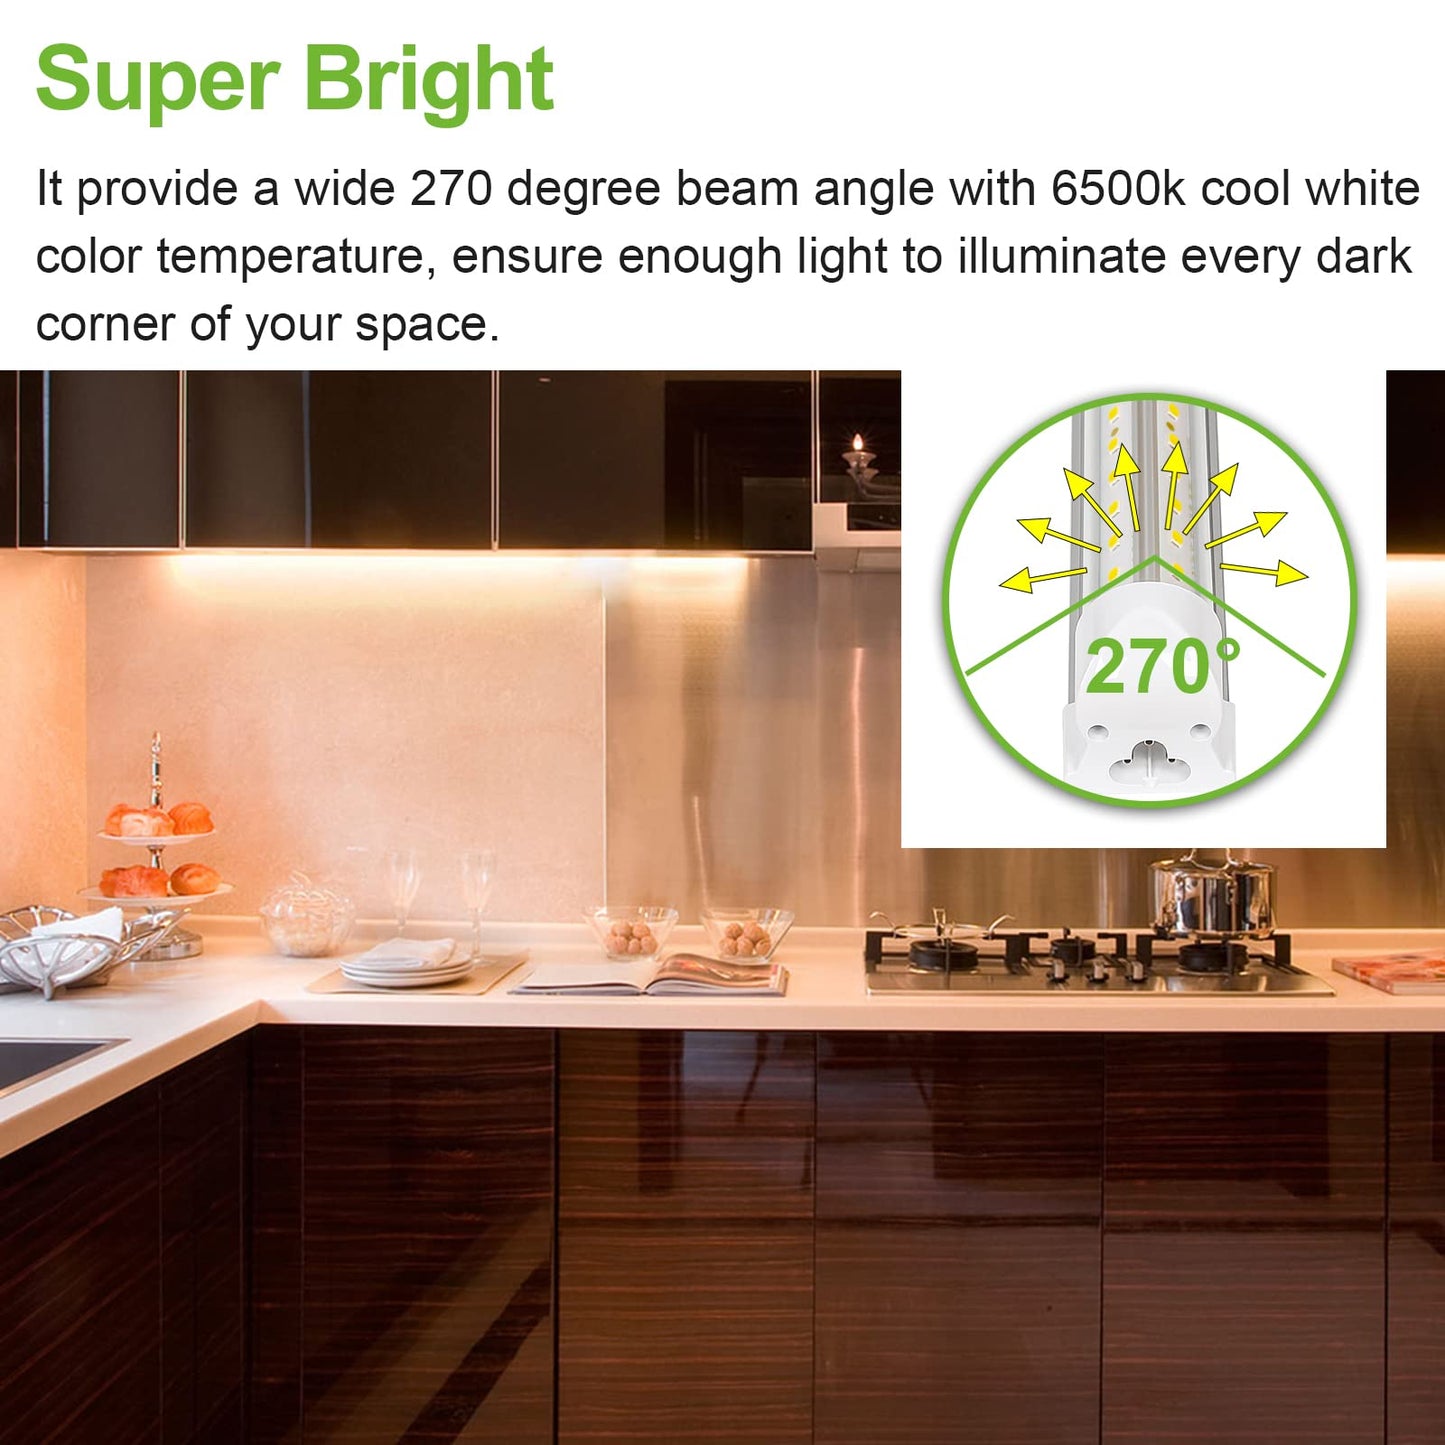 6 Pack 4FT LED Shop Light, 40W, 5200LM, 6500K Super Bright White, V Shape Integrated T8 LED Tube Light, 4 Foot Linkable Shop Lights With Built-in